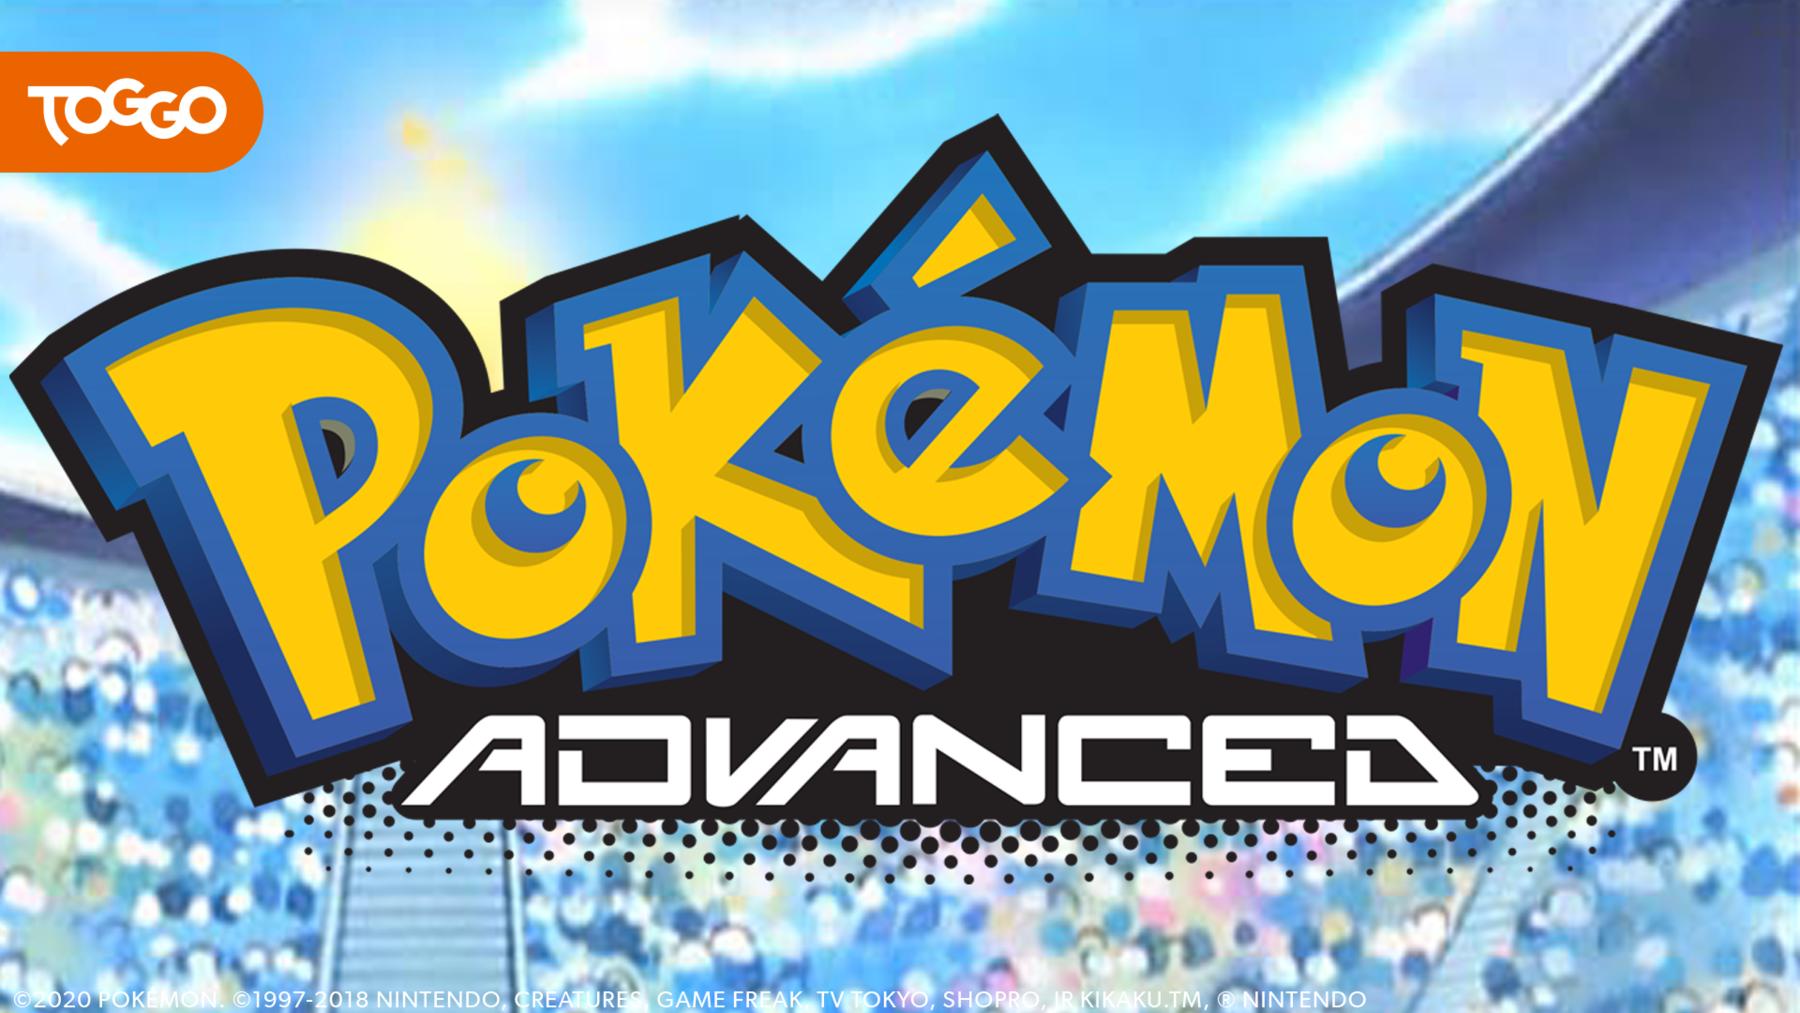 Pokémon: Advanced / 6